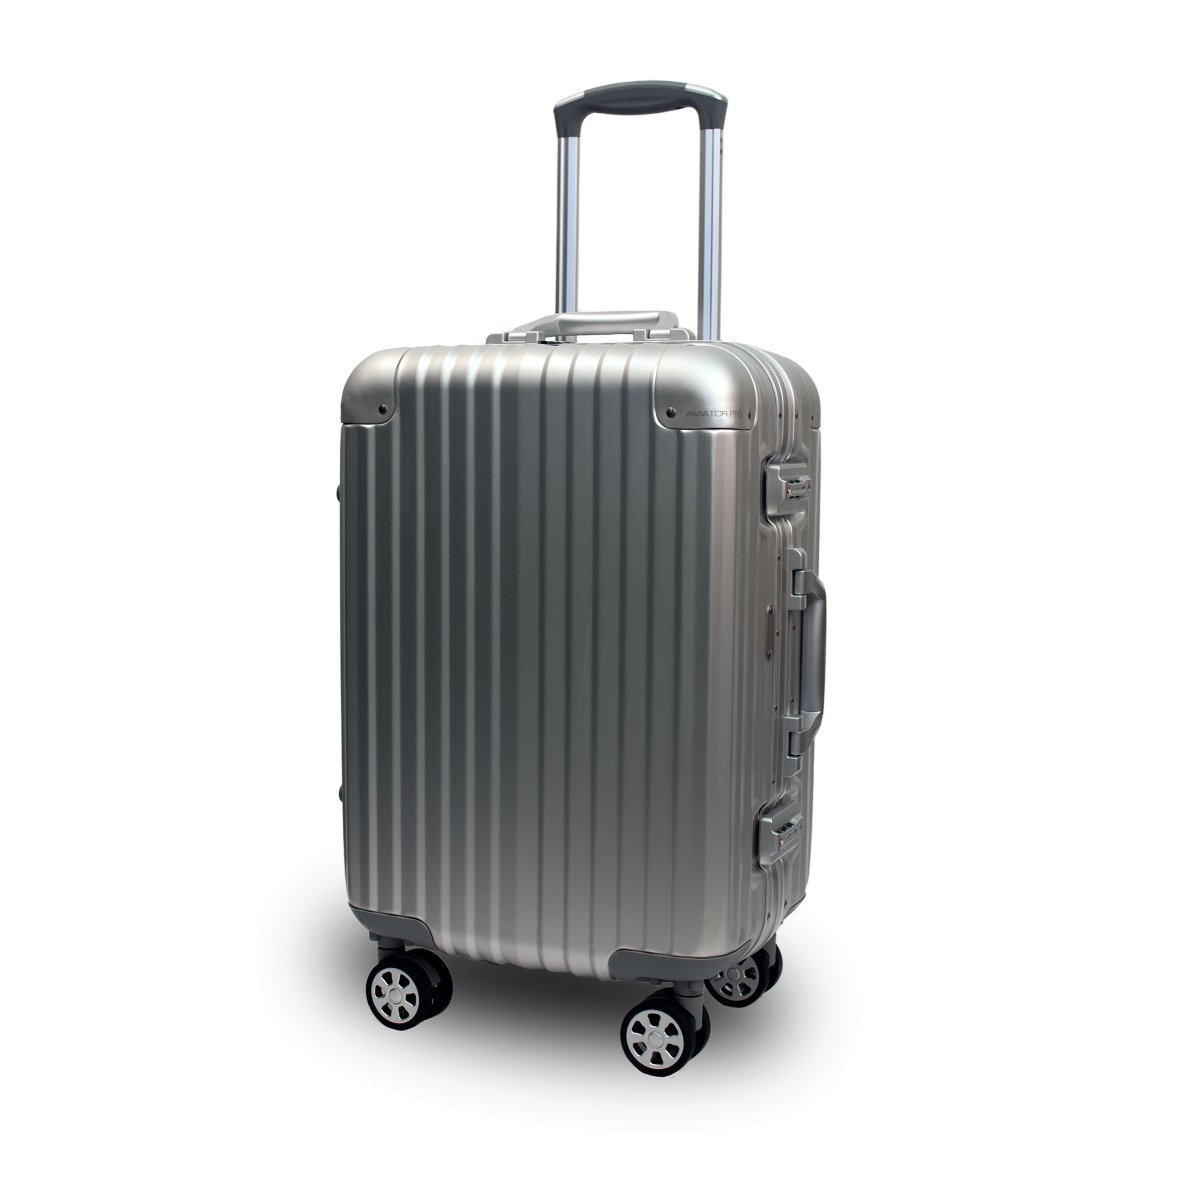 Premium Digital Luggage Scale. Starlight Silver